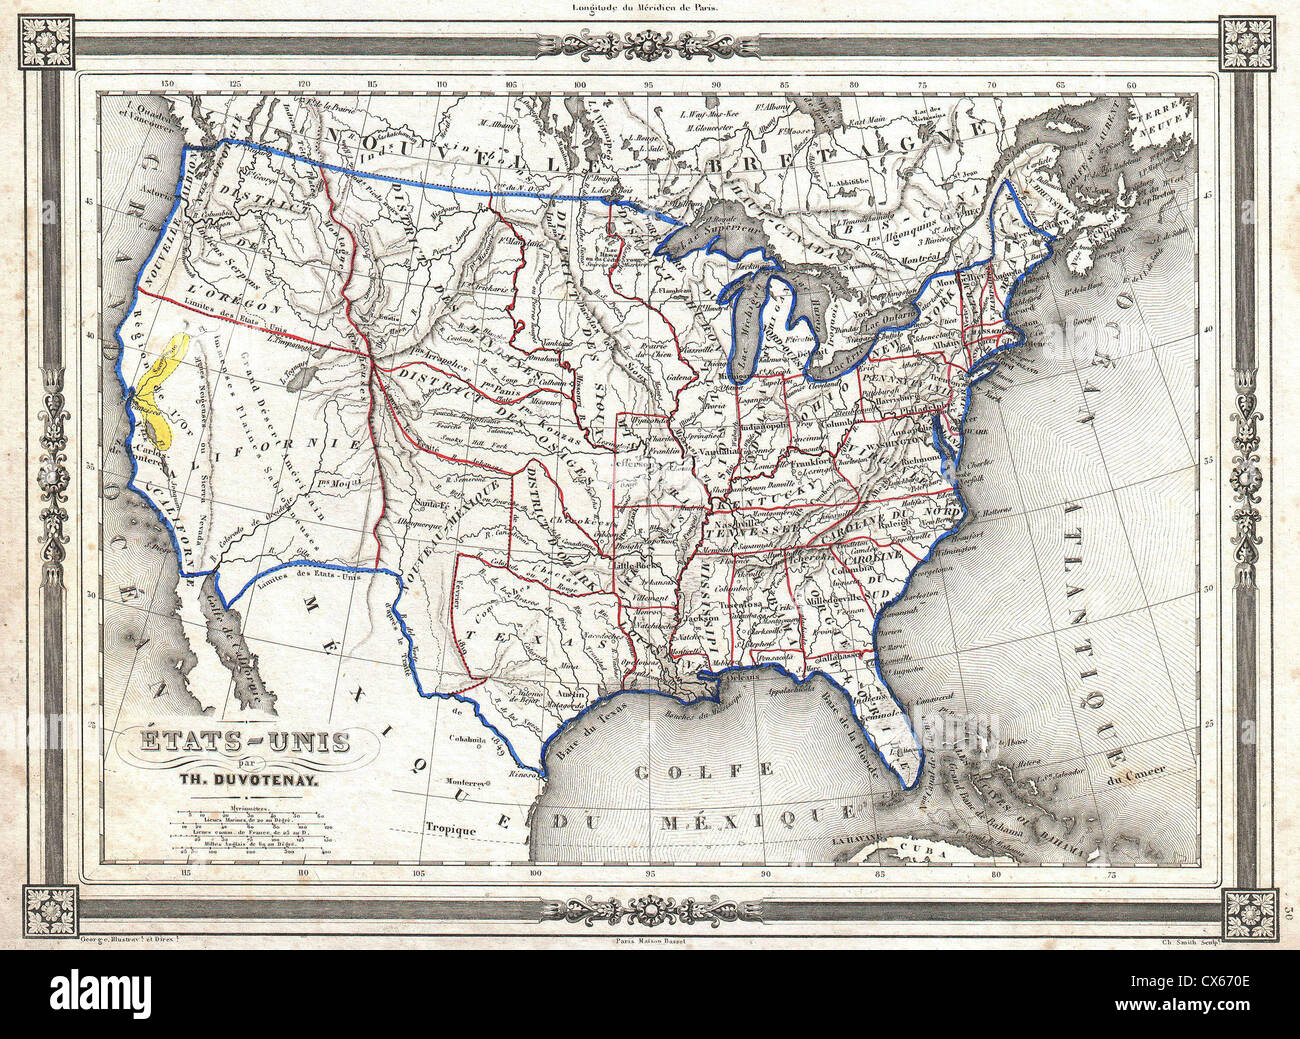 1852 Duvotenay Karte der Vereinigten Staaten (Gold Rush) Stockfoto